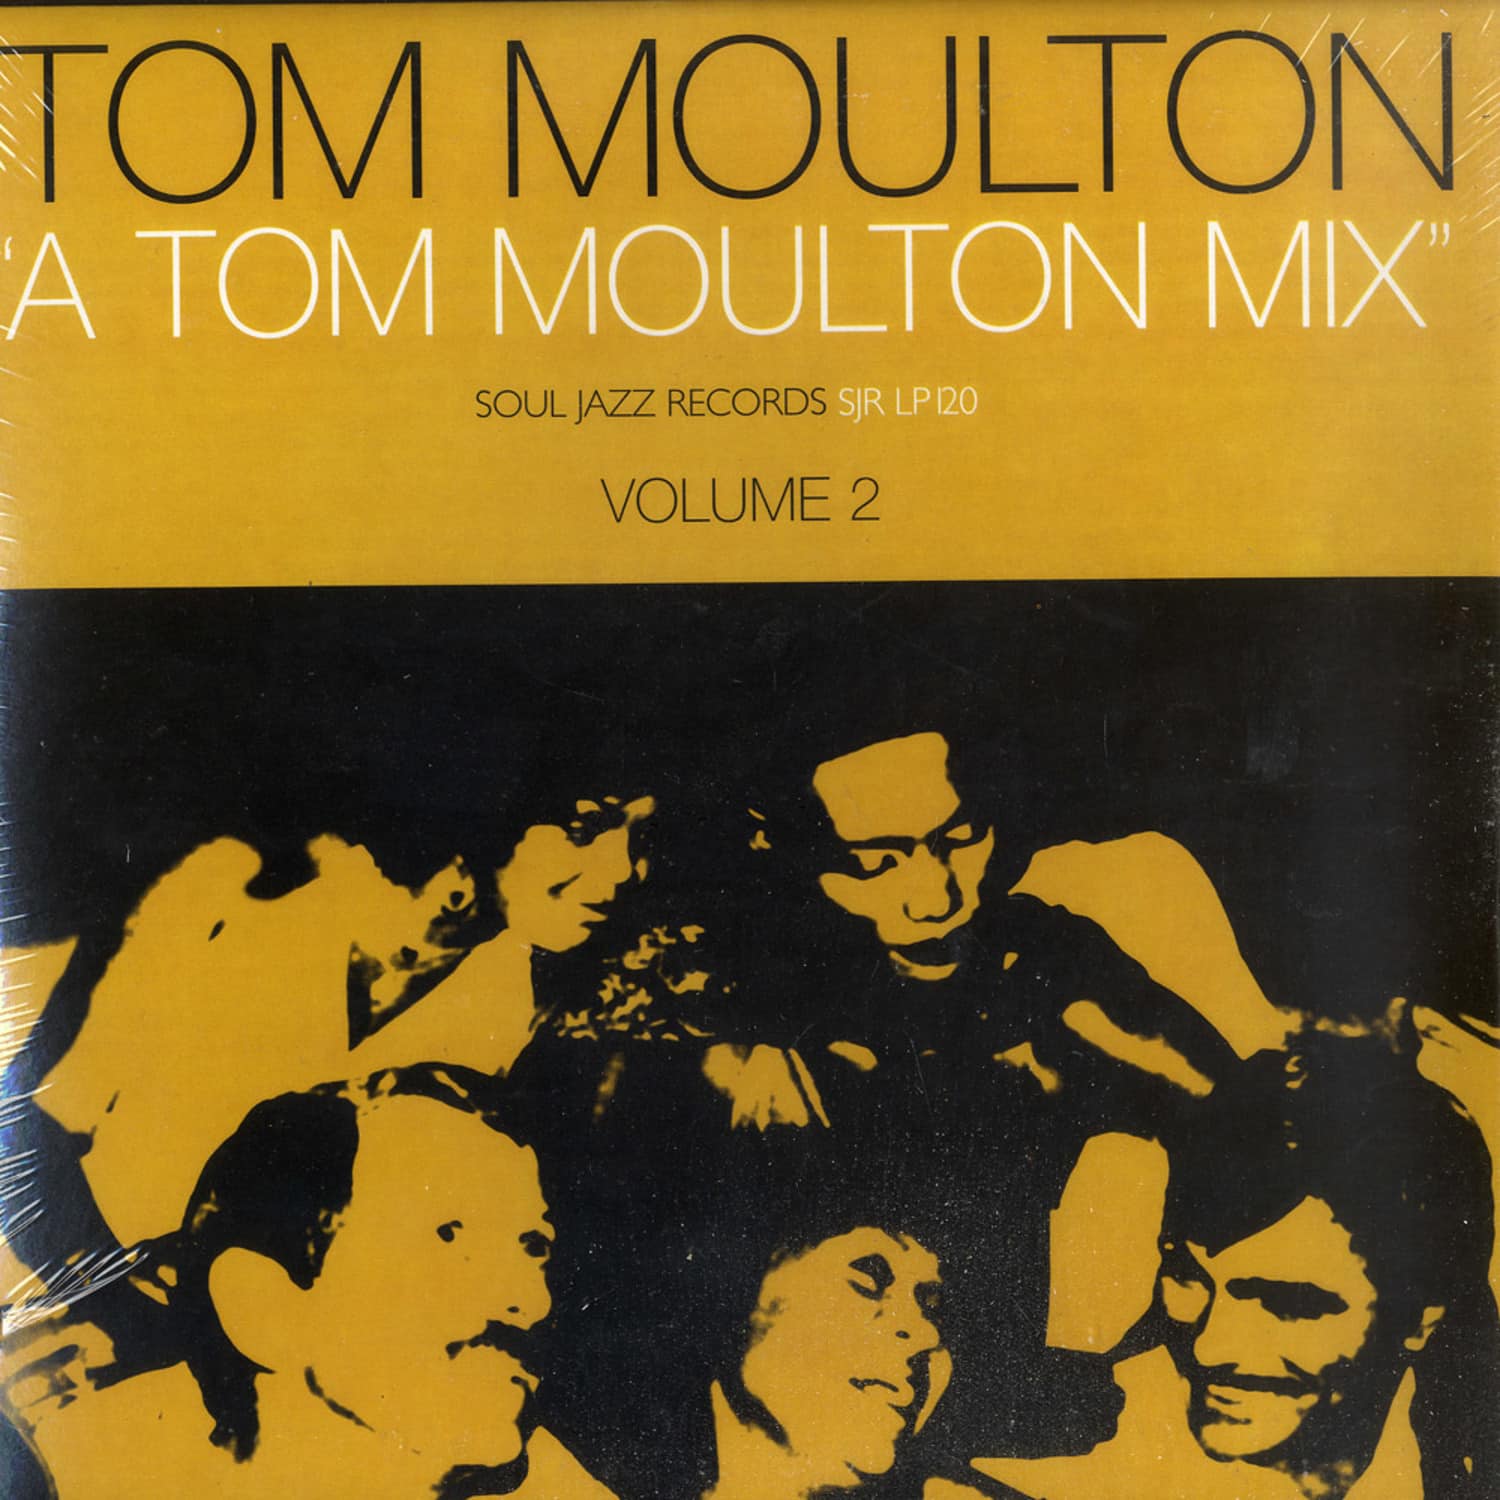 Various Artists - A TOM MOULTON MIX VOL.2 